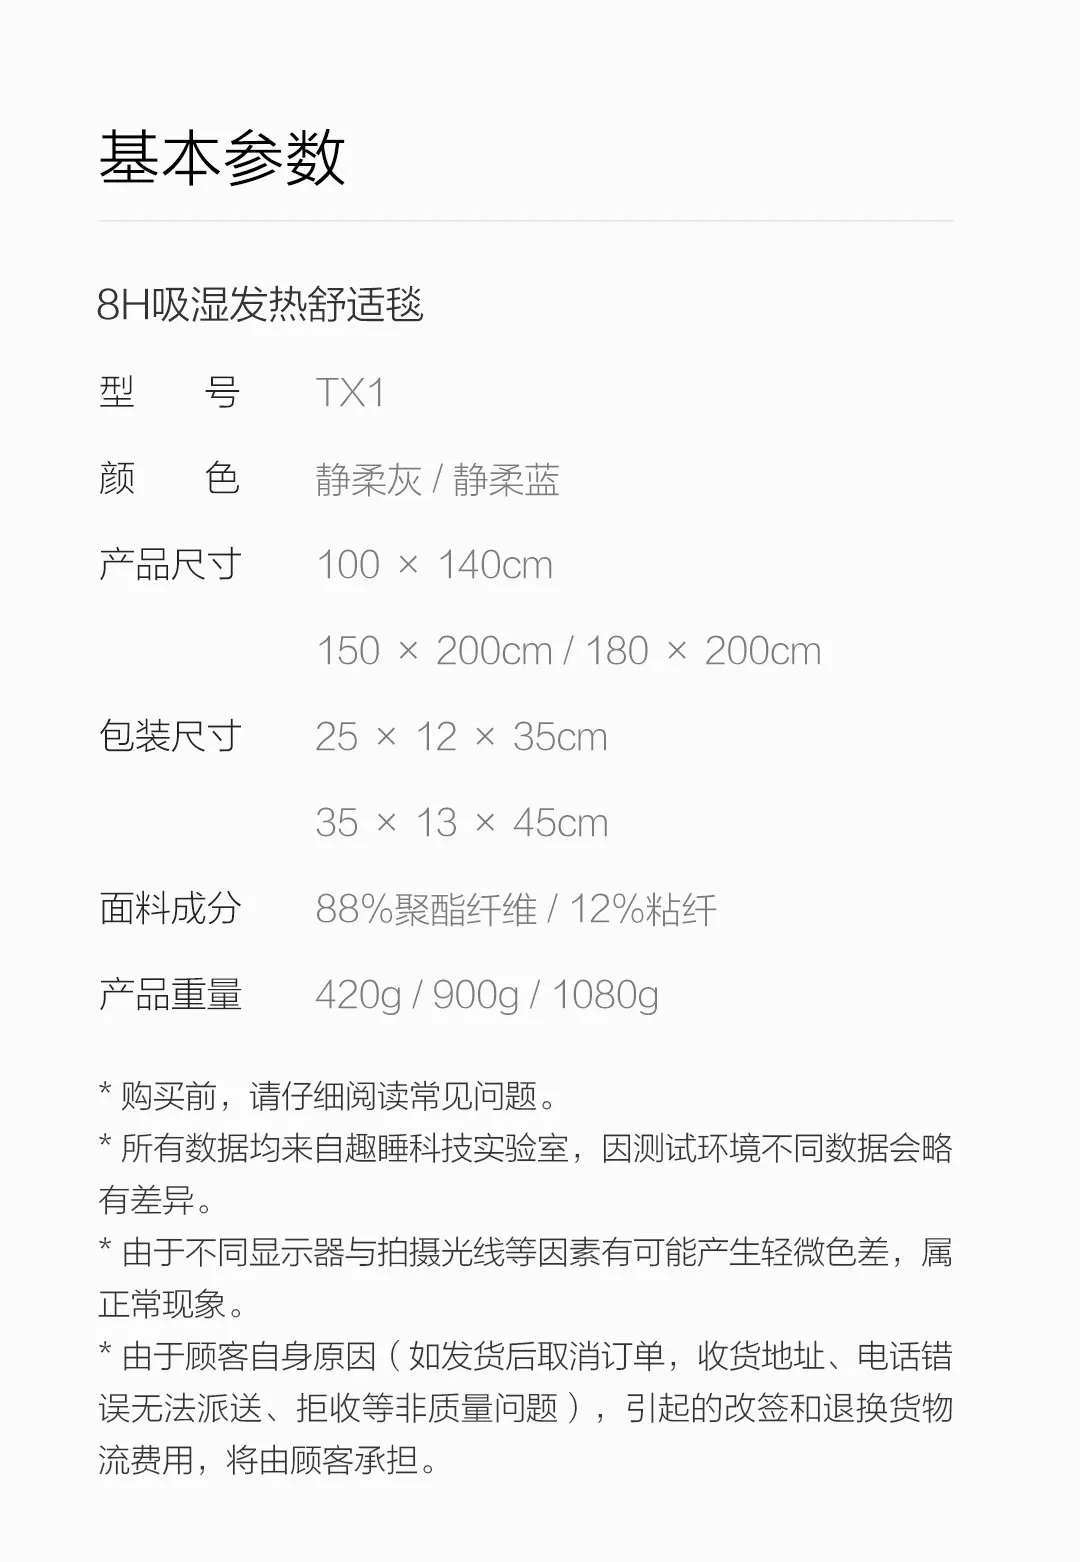 Xiaomi Mijia Youpin 8H влагопоглощающее теплое одеяло тонкая фланелевая влагопоглощающая антистатическая ткань